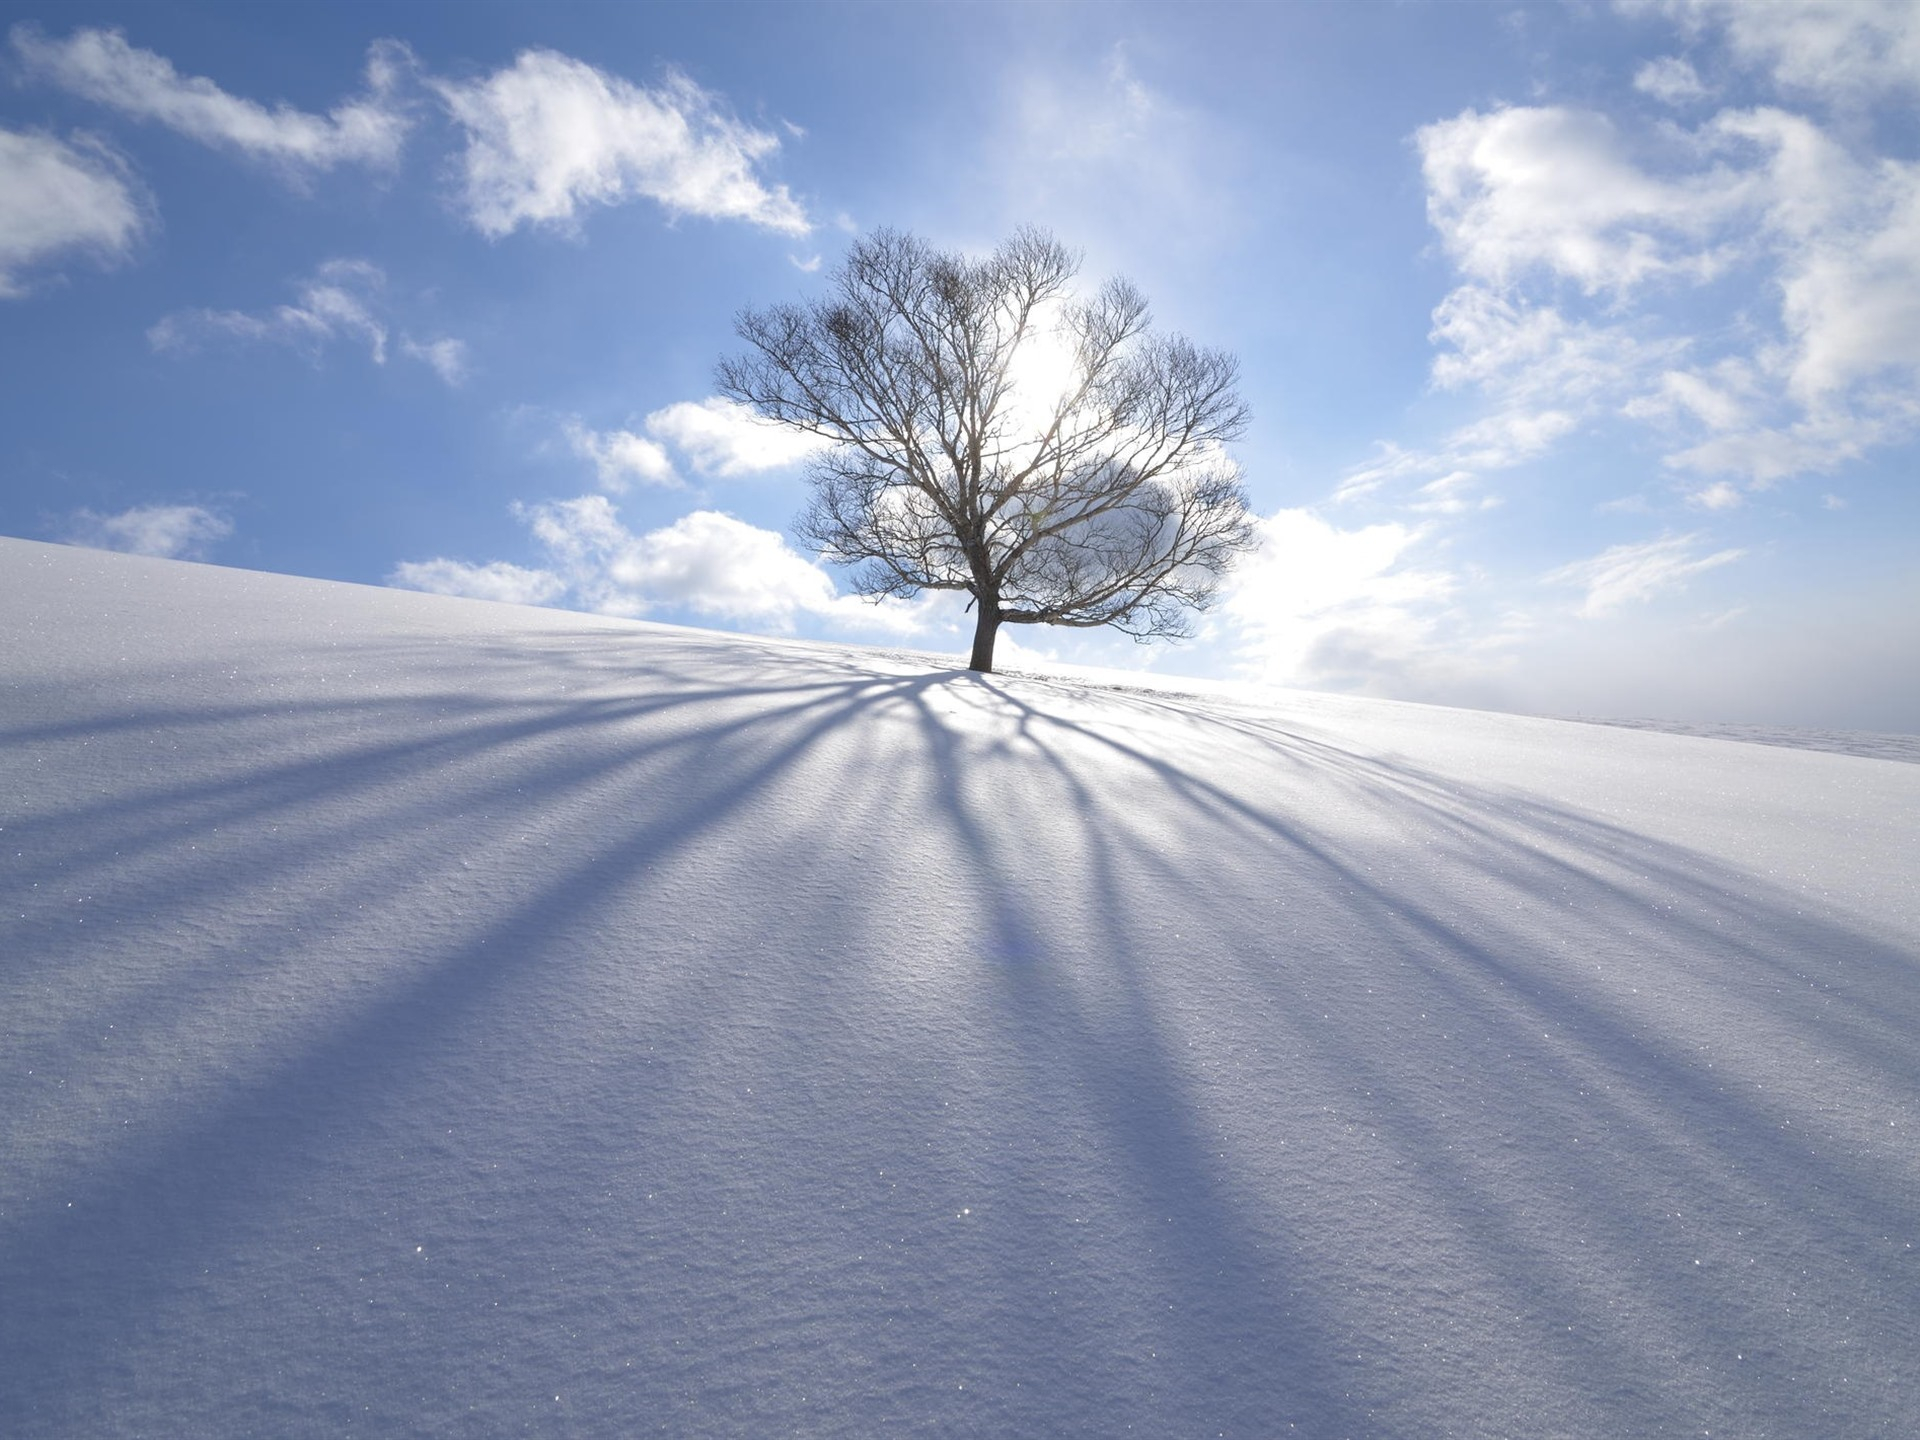 免费照片晴朗天气下雪地上的一棵孤独的树